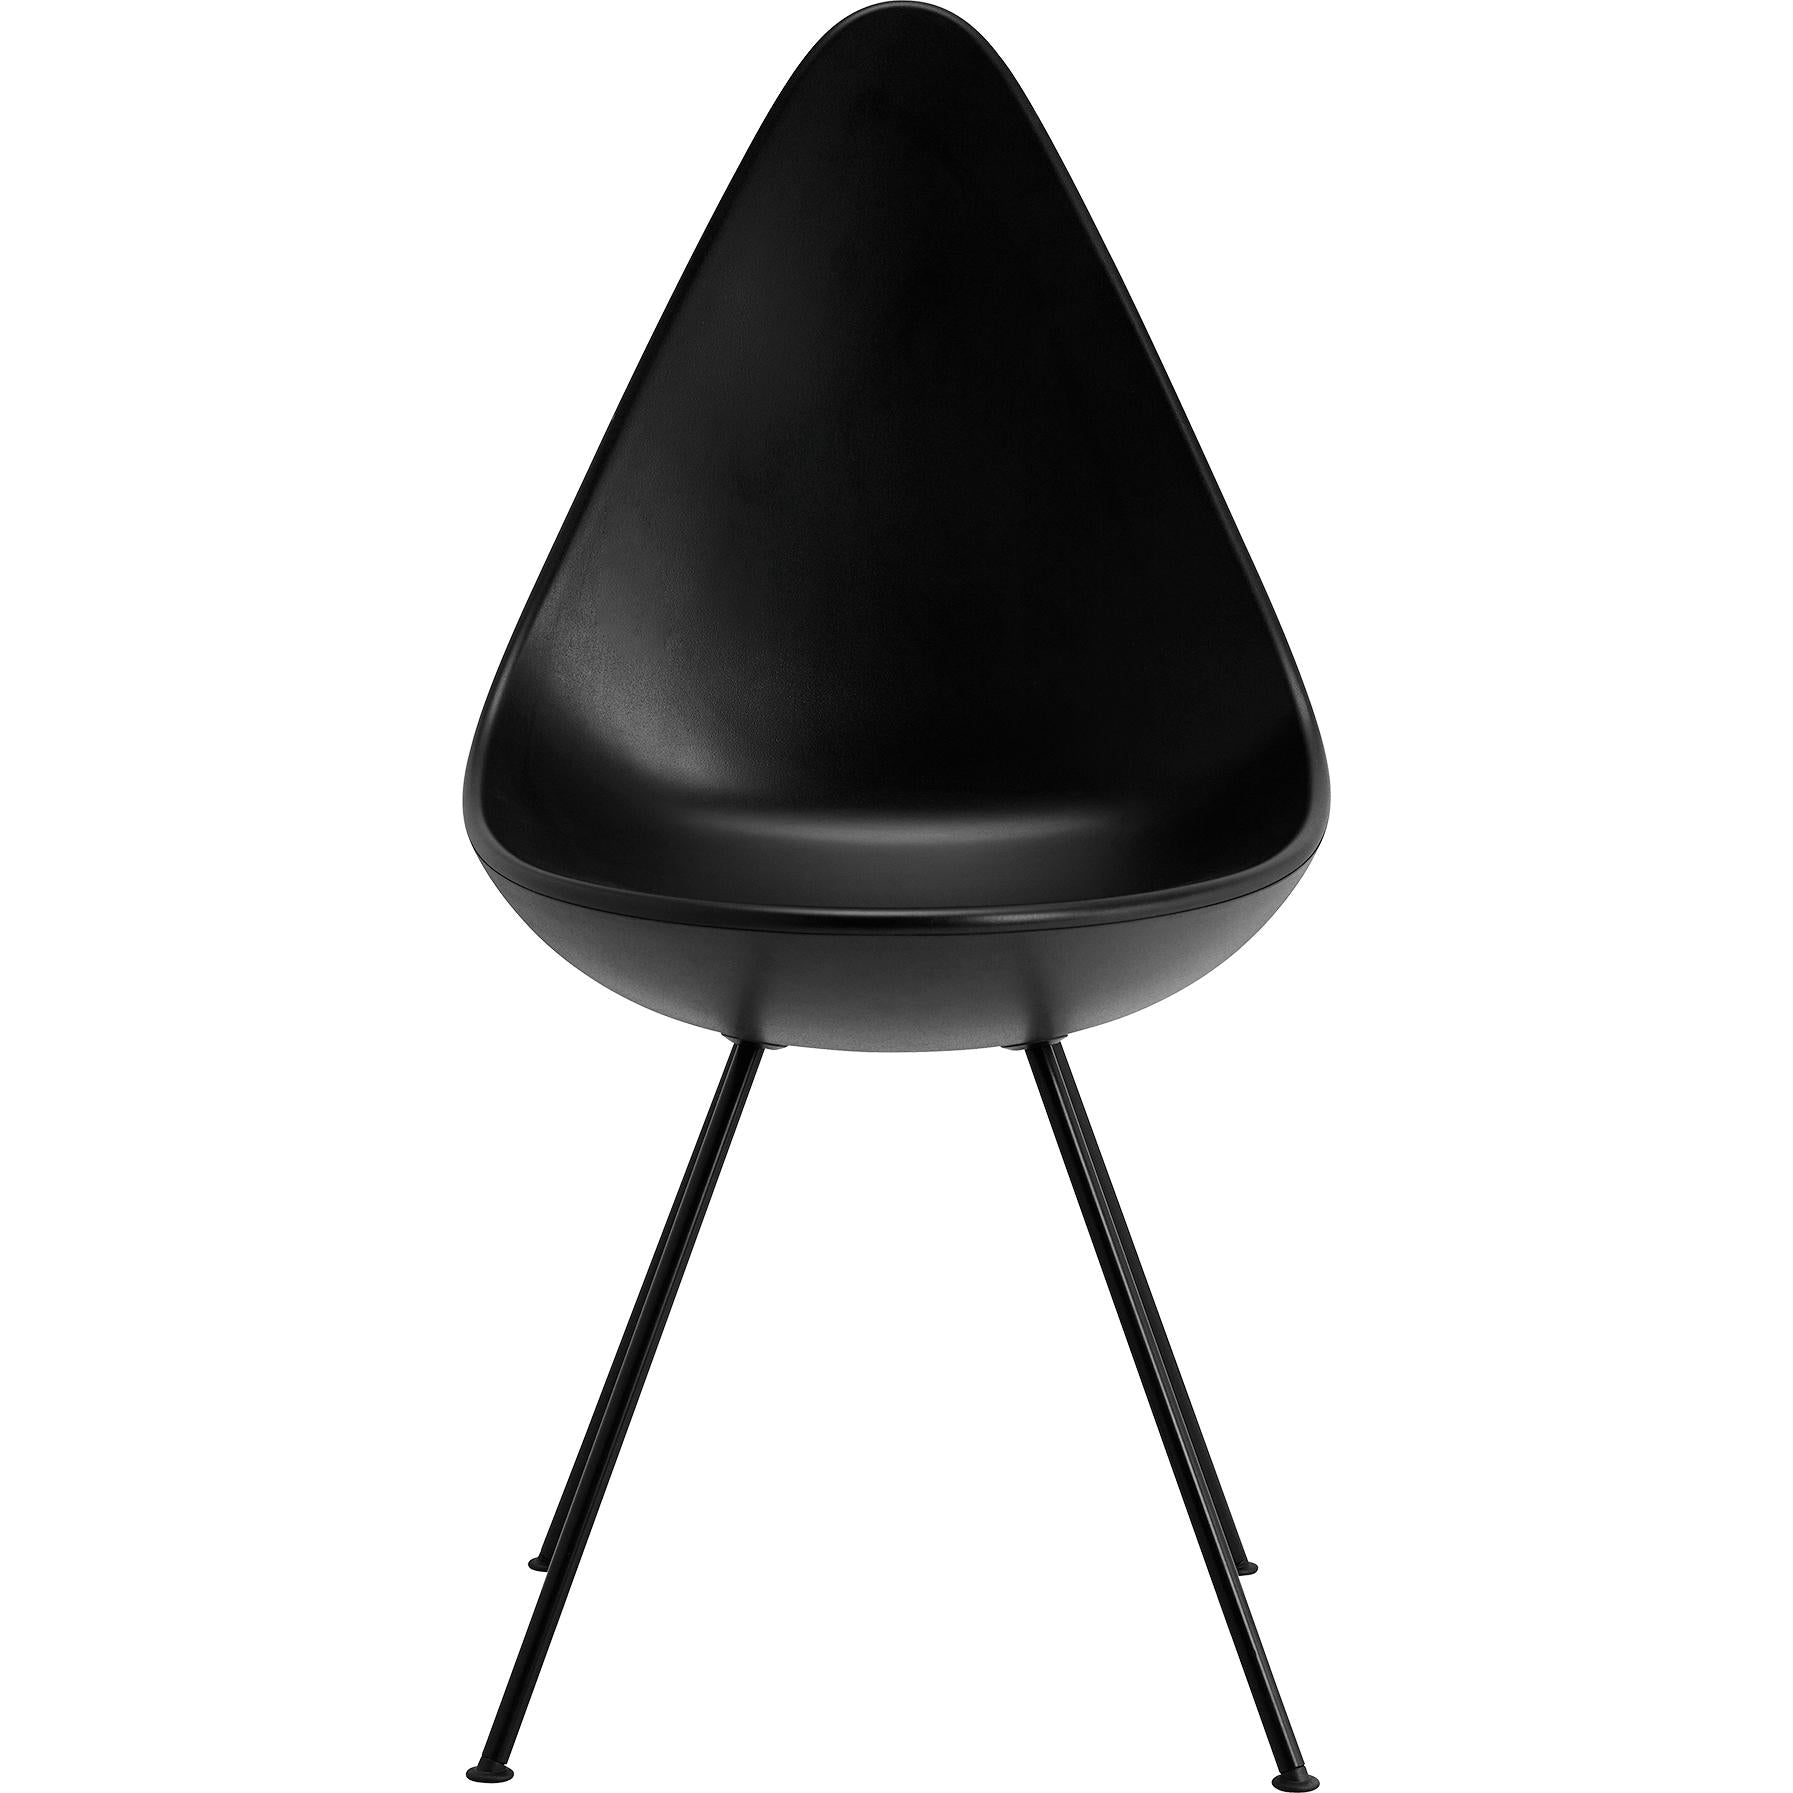 Fritz Hansen Le chaise de chaise monochrome en plastique, noir